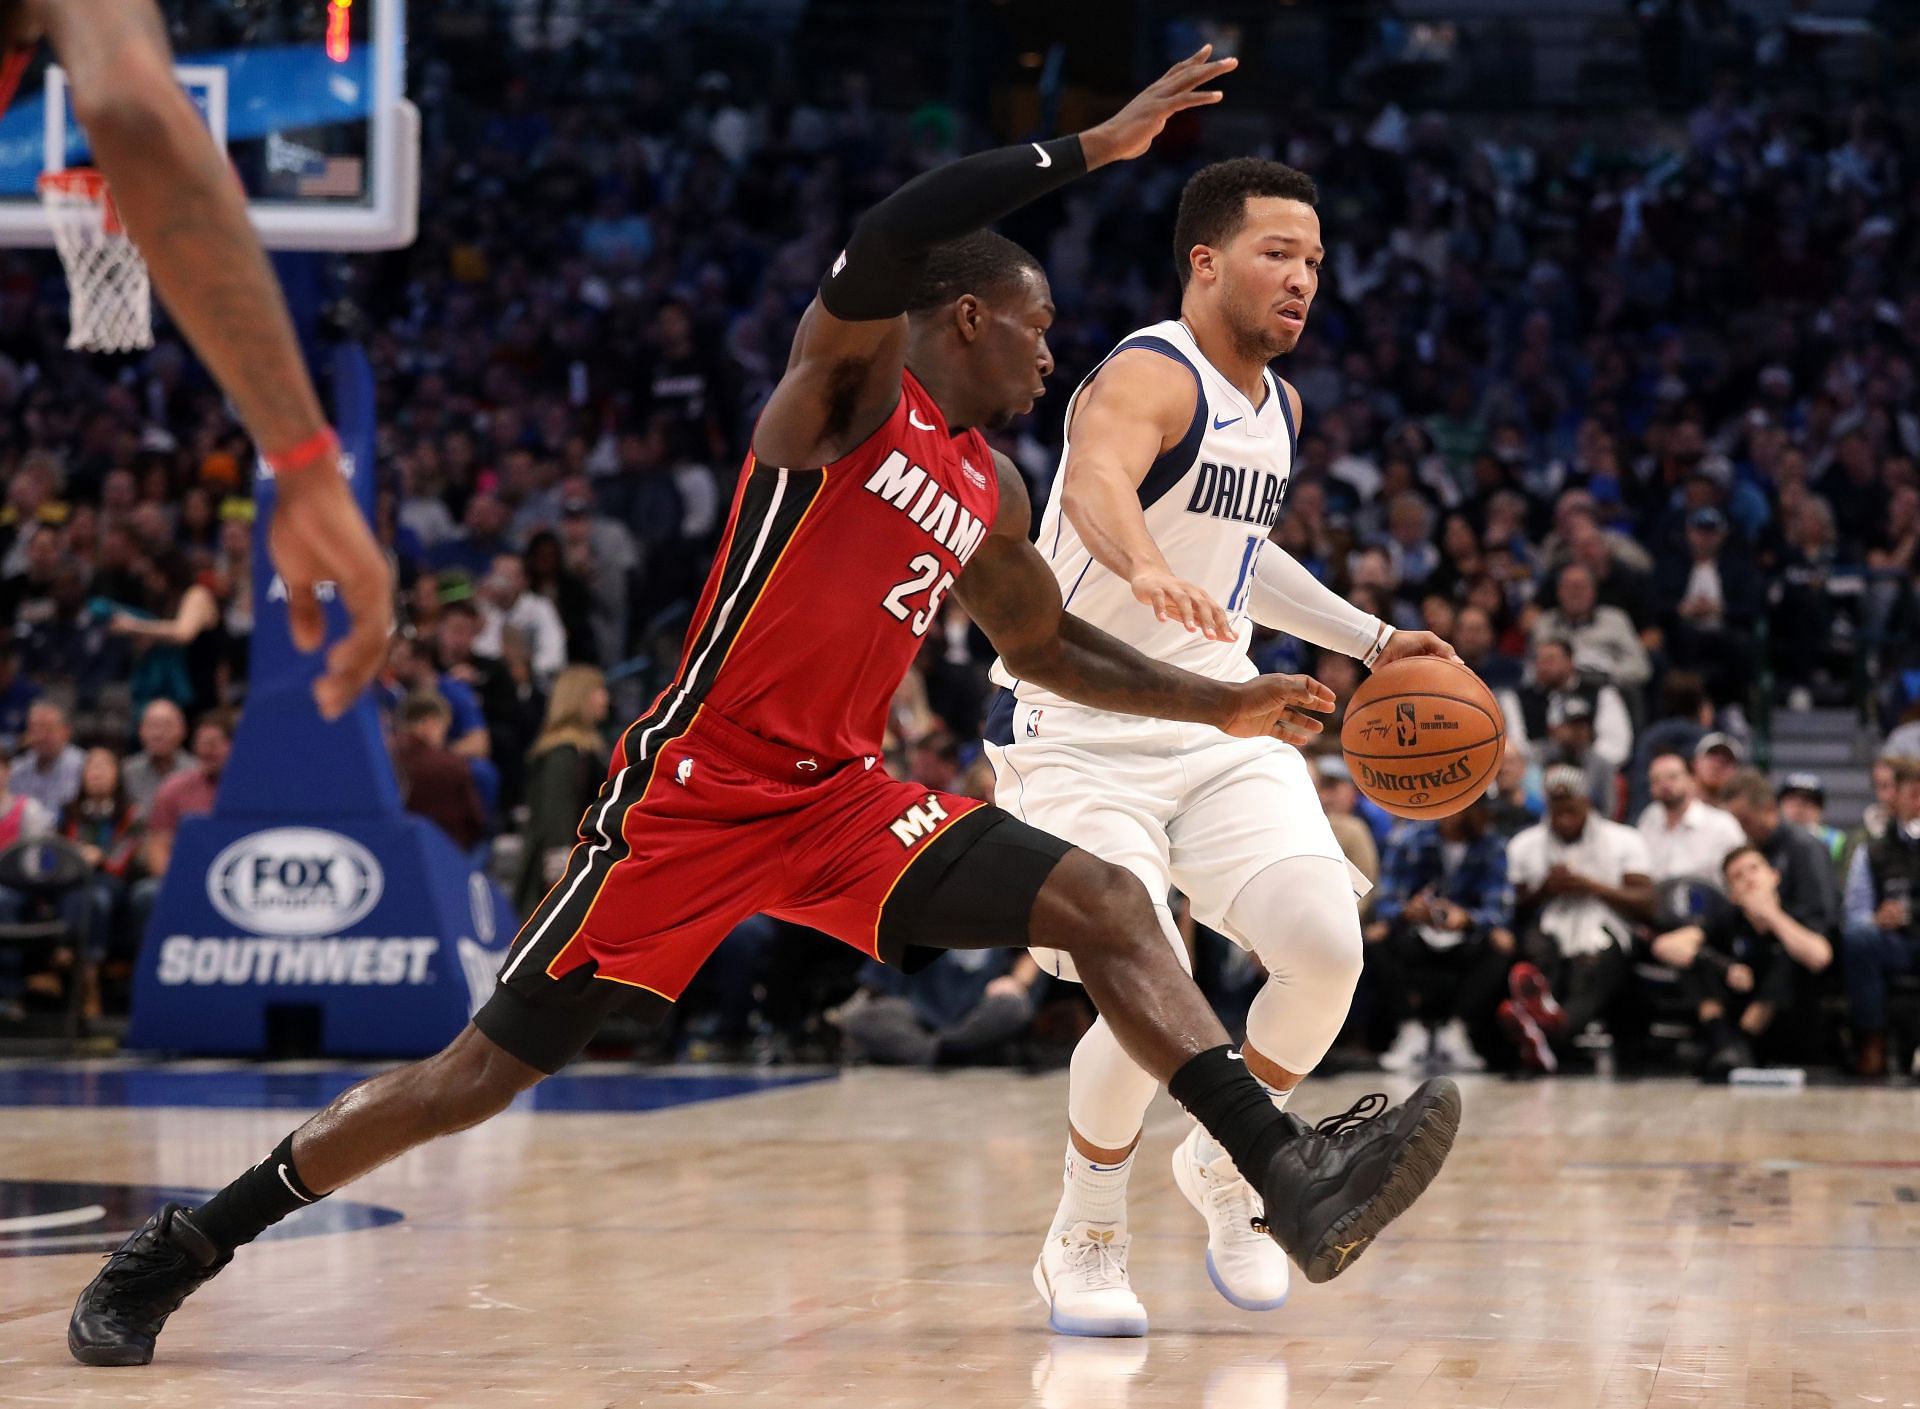 Miami Heat willl take on the Dallas Mavericks on Tuesday